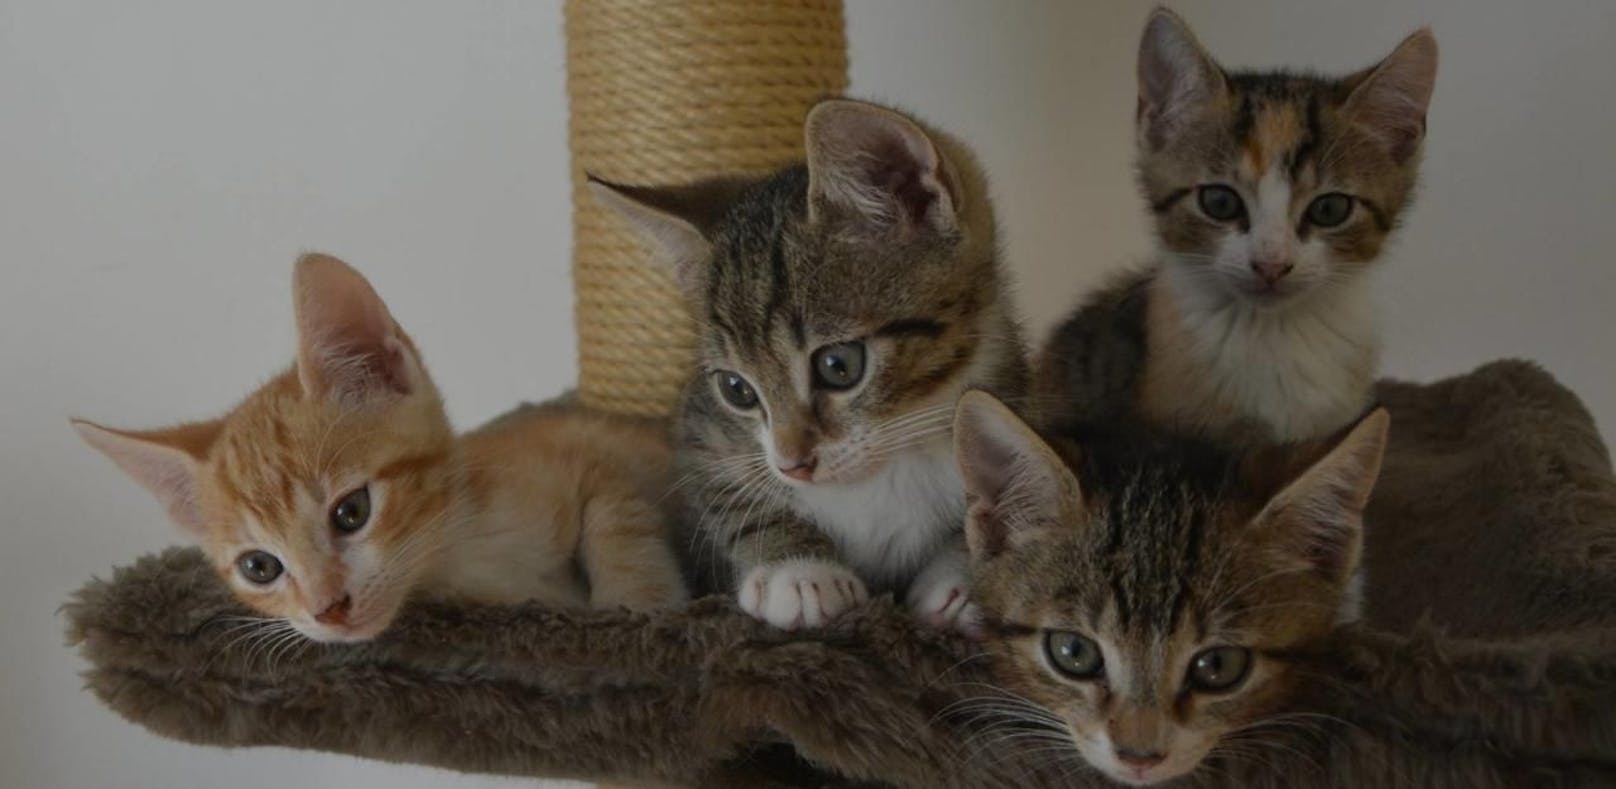 Diese Katzen-Bande wurde im Restmüll entsorgt